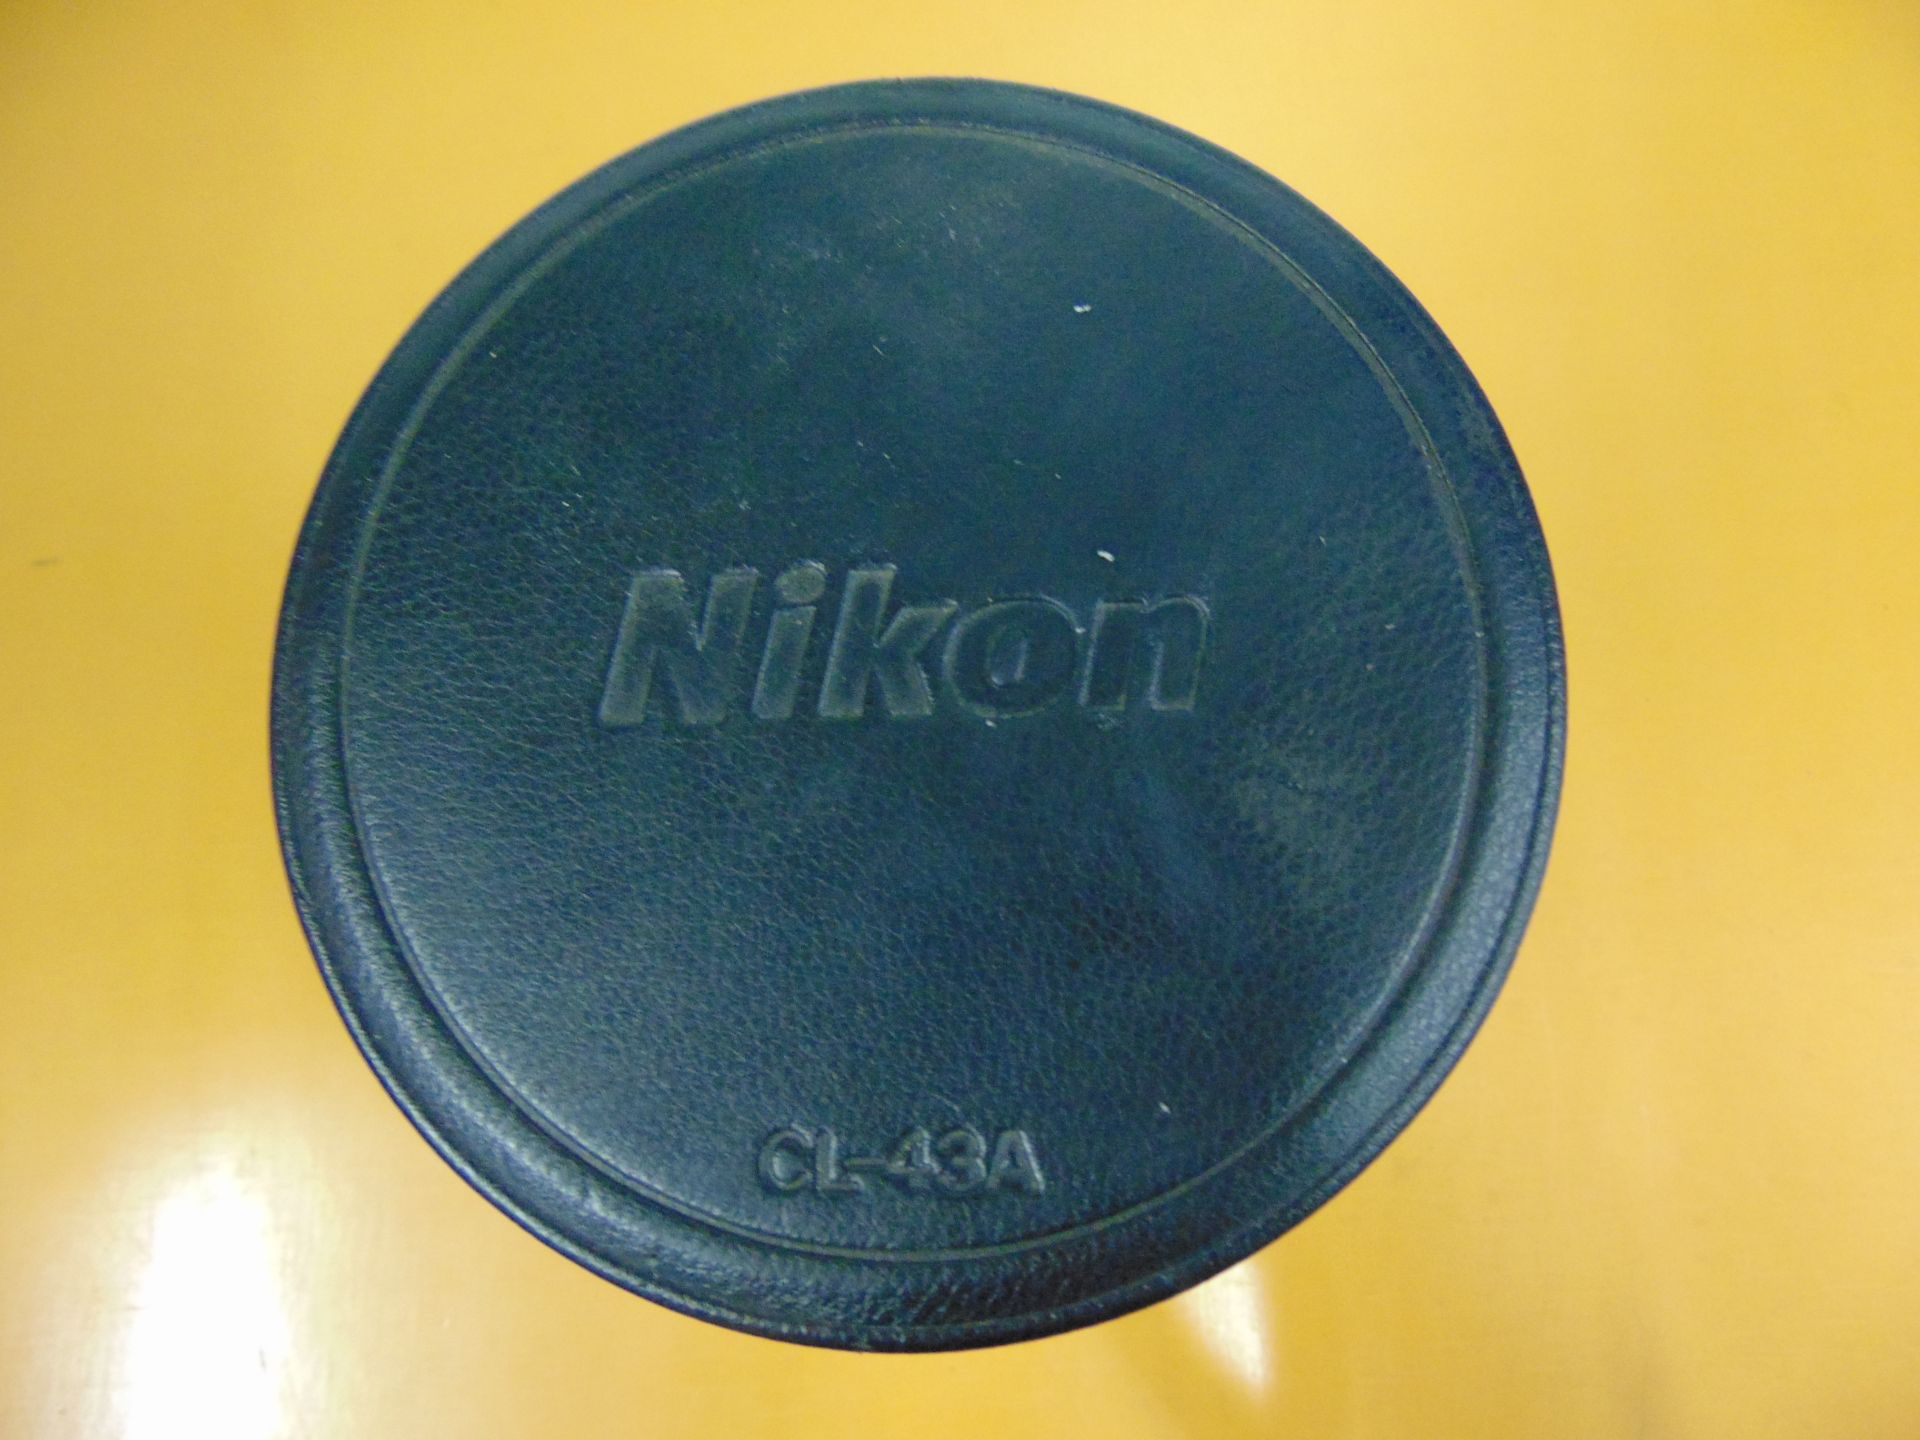 Nikon ED AF Nikkor 80-200mm 1:2.8 D Lense with Leather Carry Case - Image 8 of 8